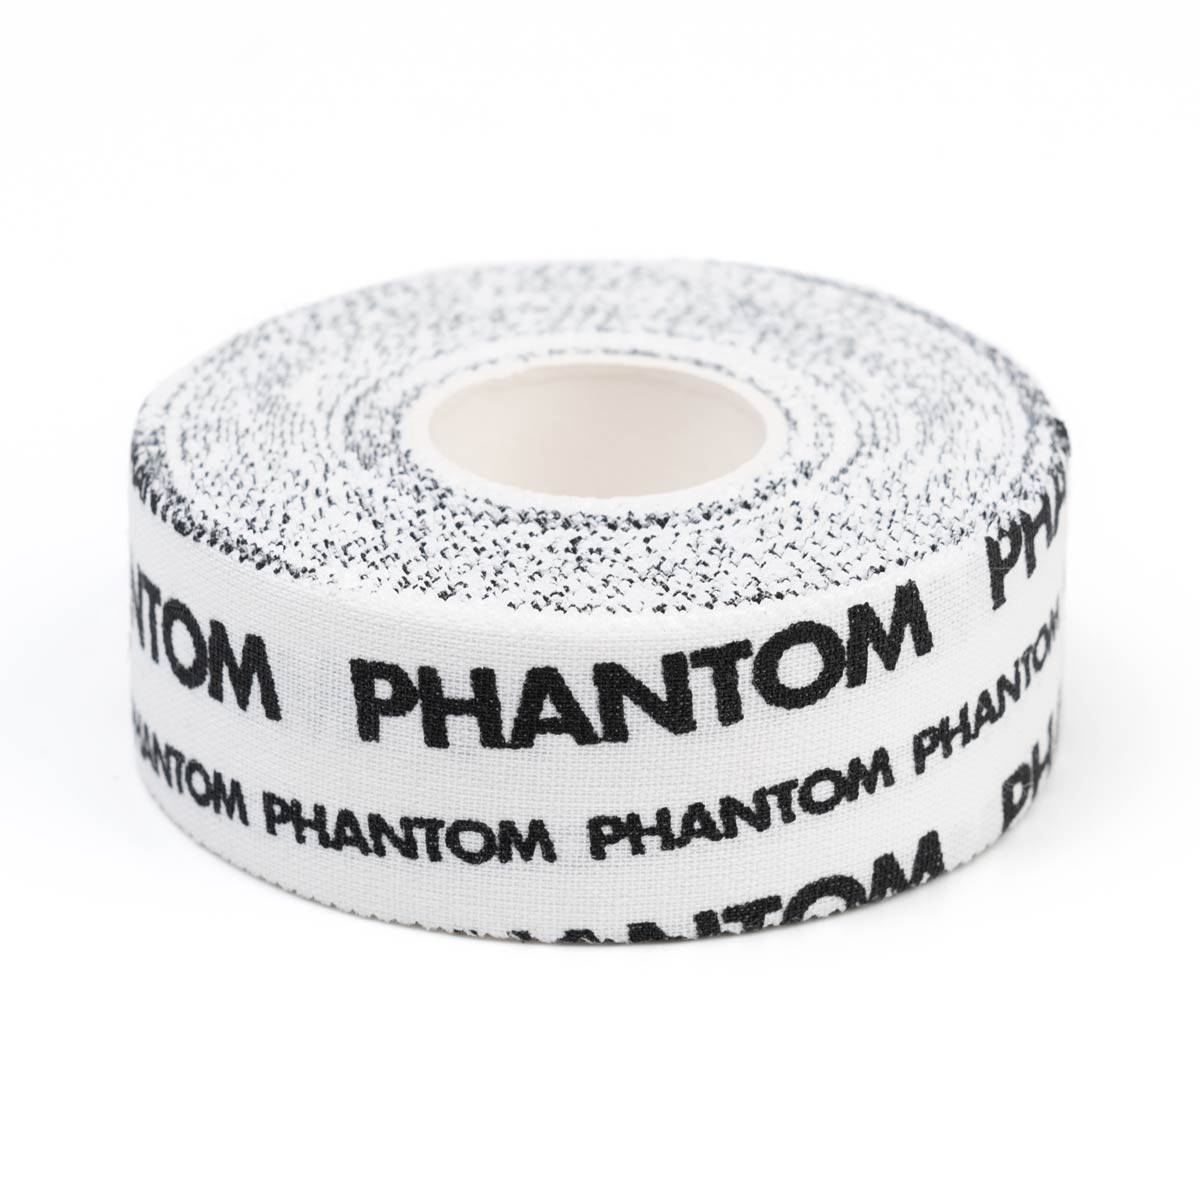 Das Phantom Pro Griptape für Kampfsport in der Farbe Weiß.